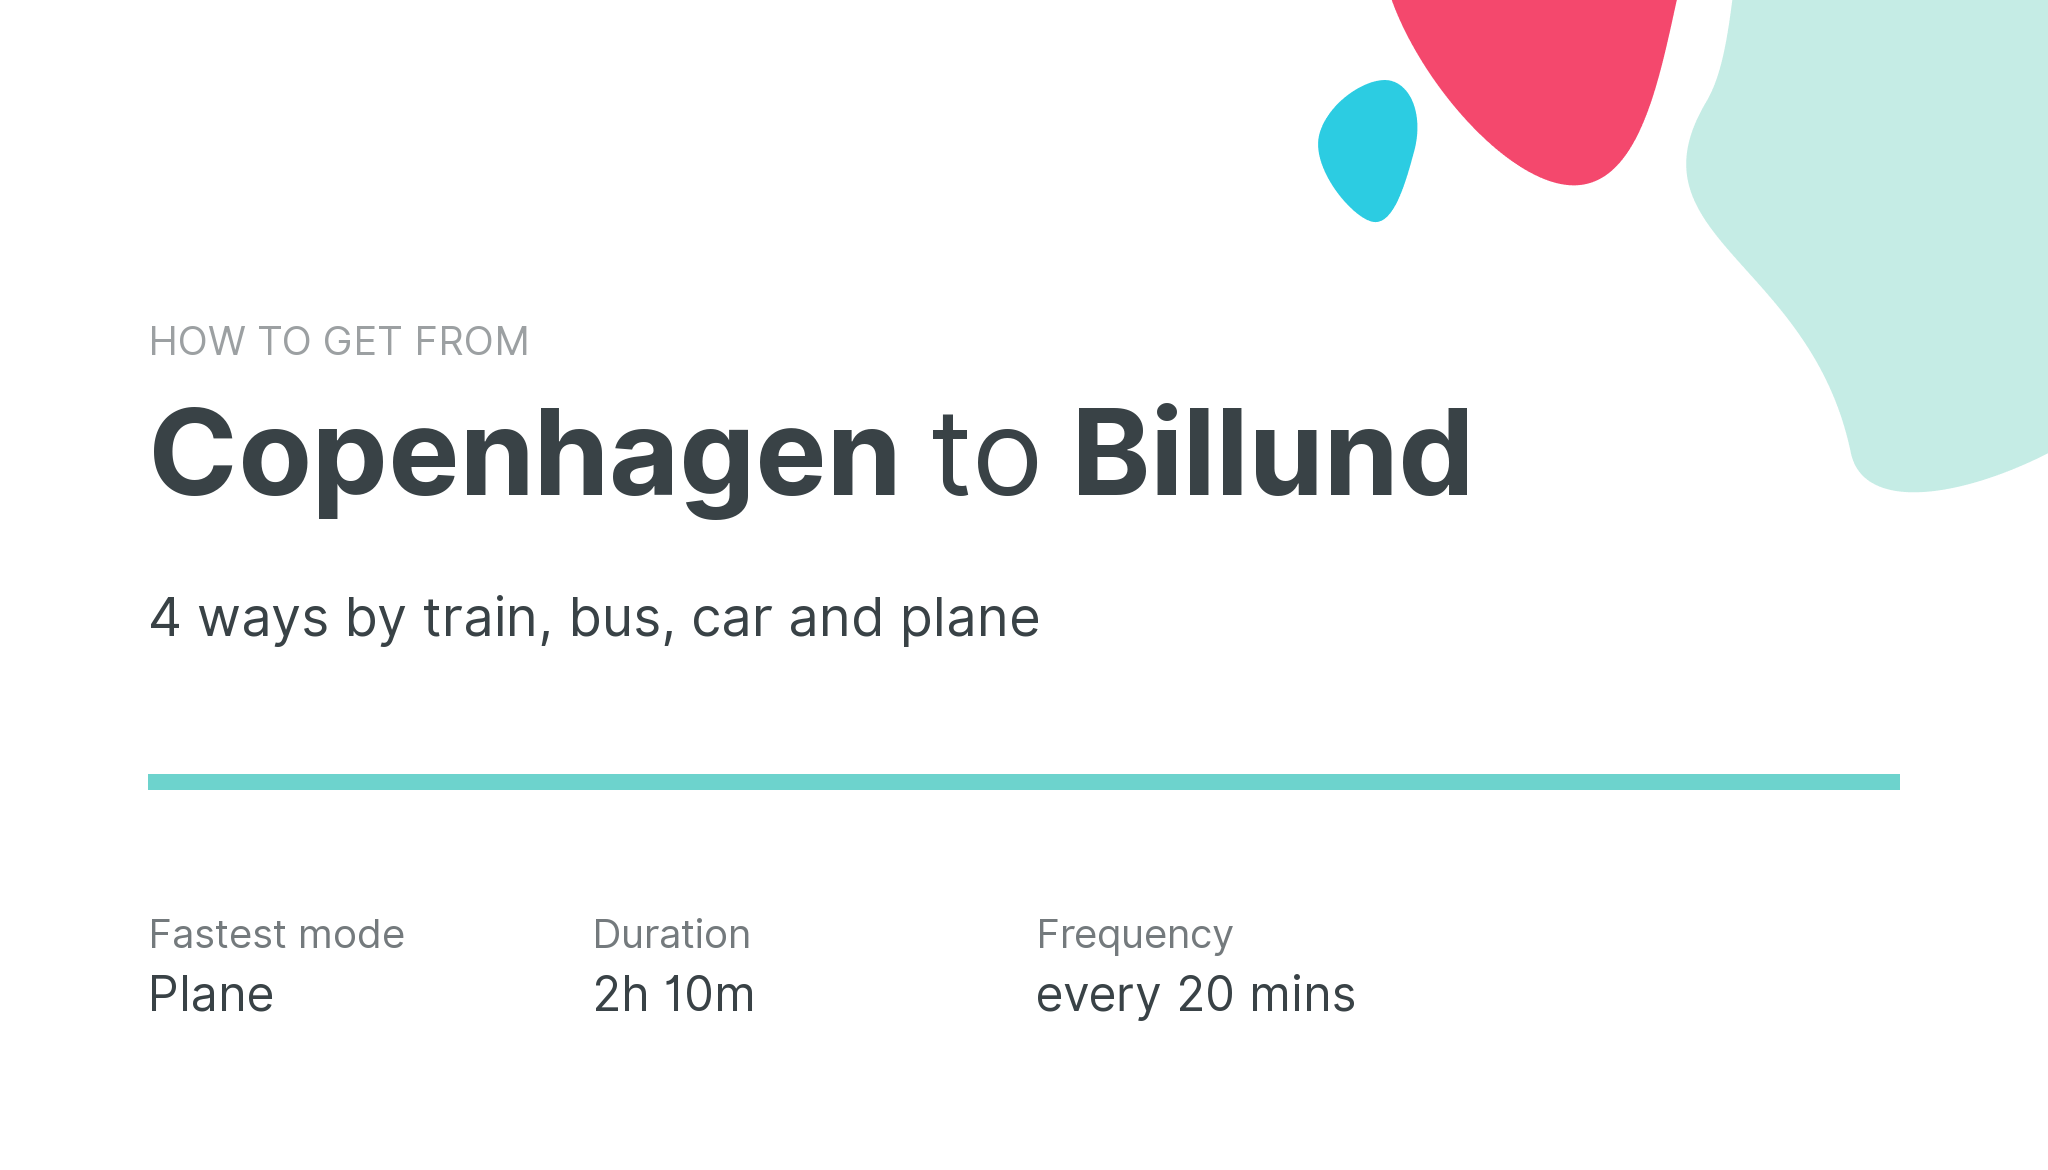 How do I get from Copenhagen to Billund